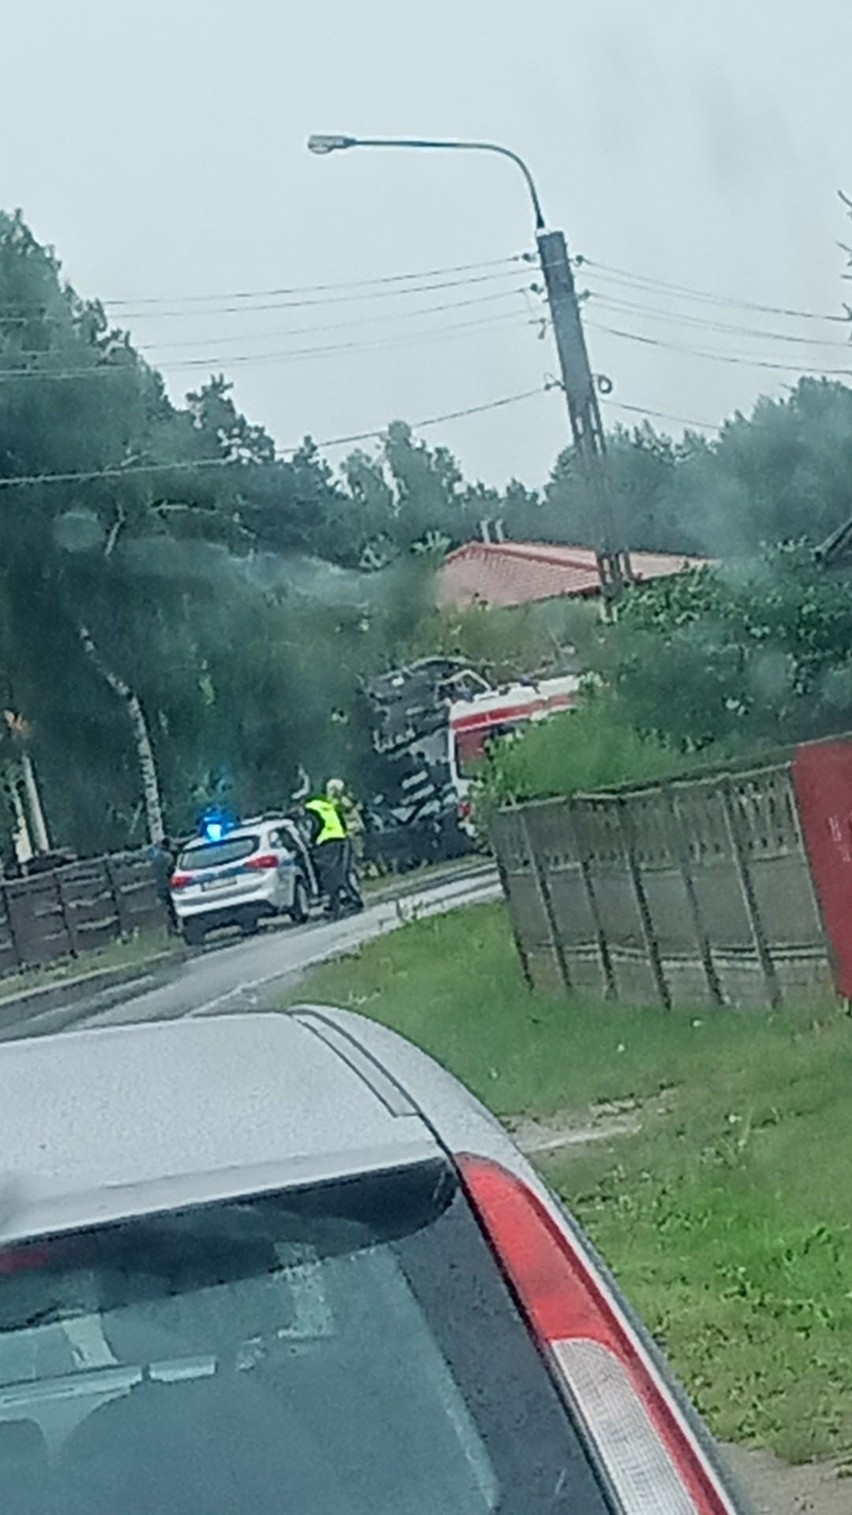 W Bąkowcu w gminie Garbatka - Letnisko ford wjechał w ciężarówkę wyladowną drewnem. Kierująca osobówką została ranna